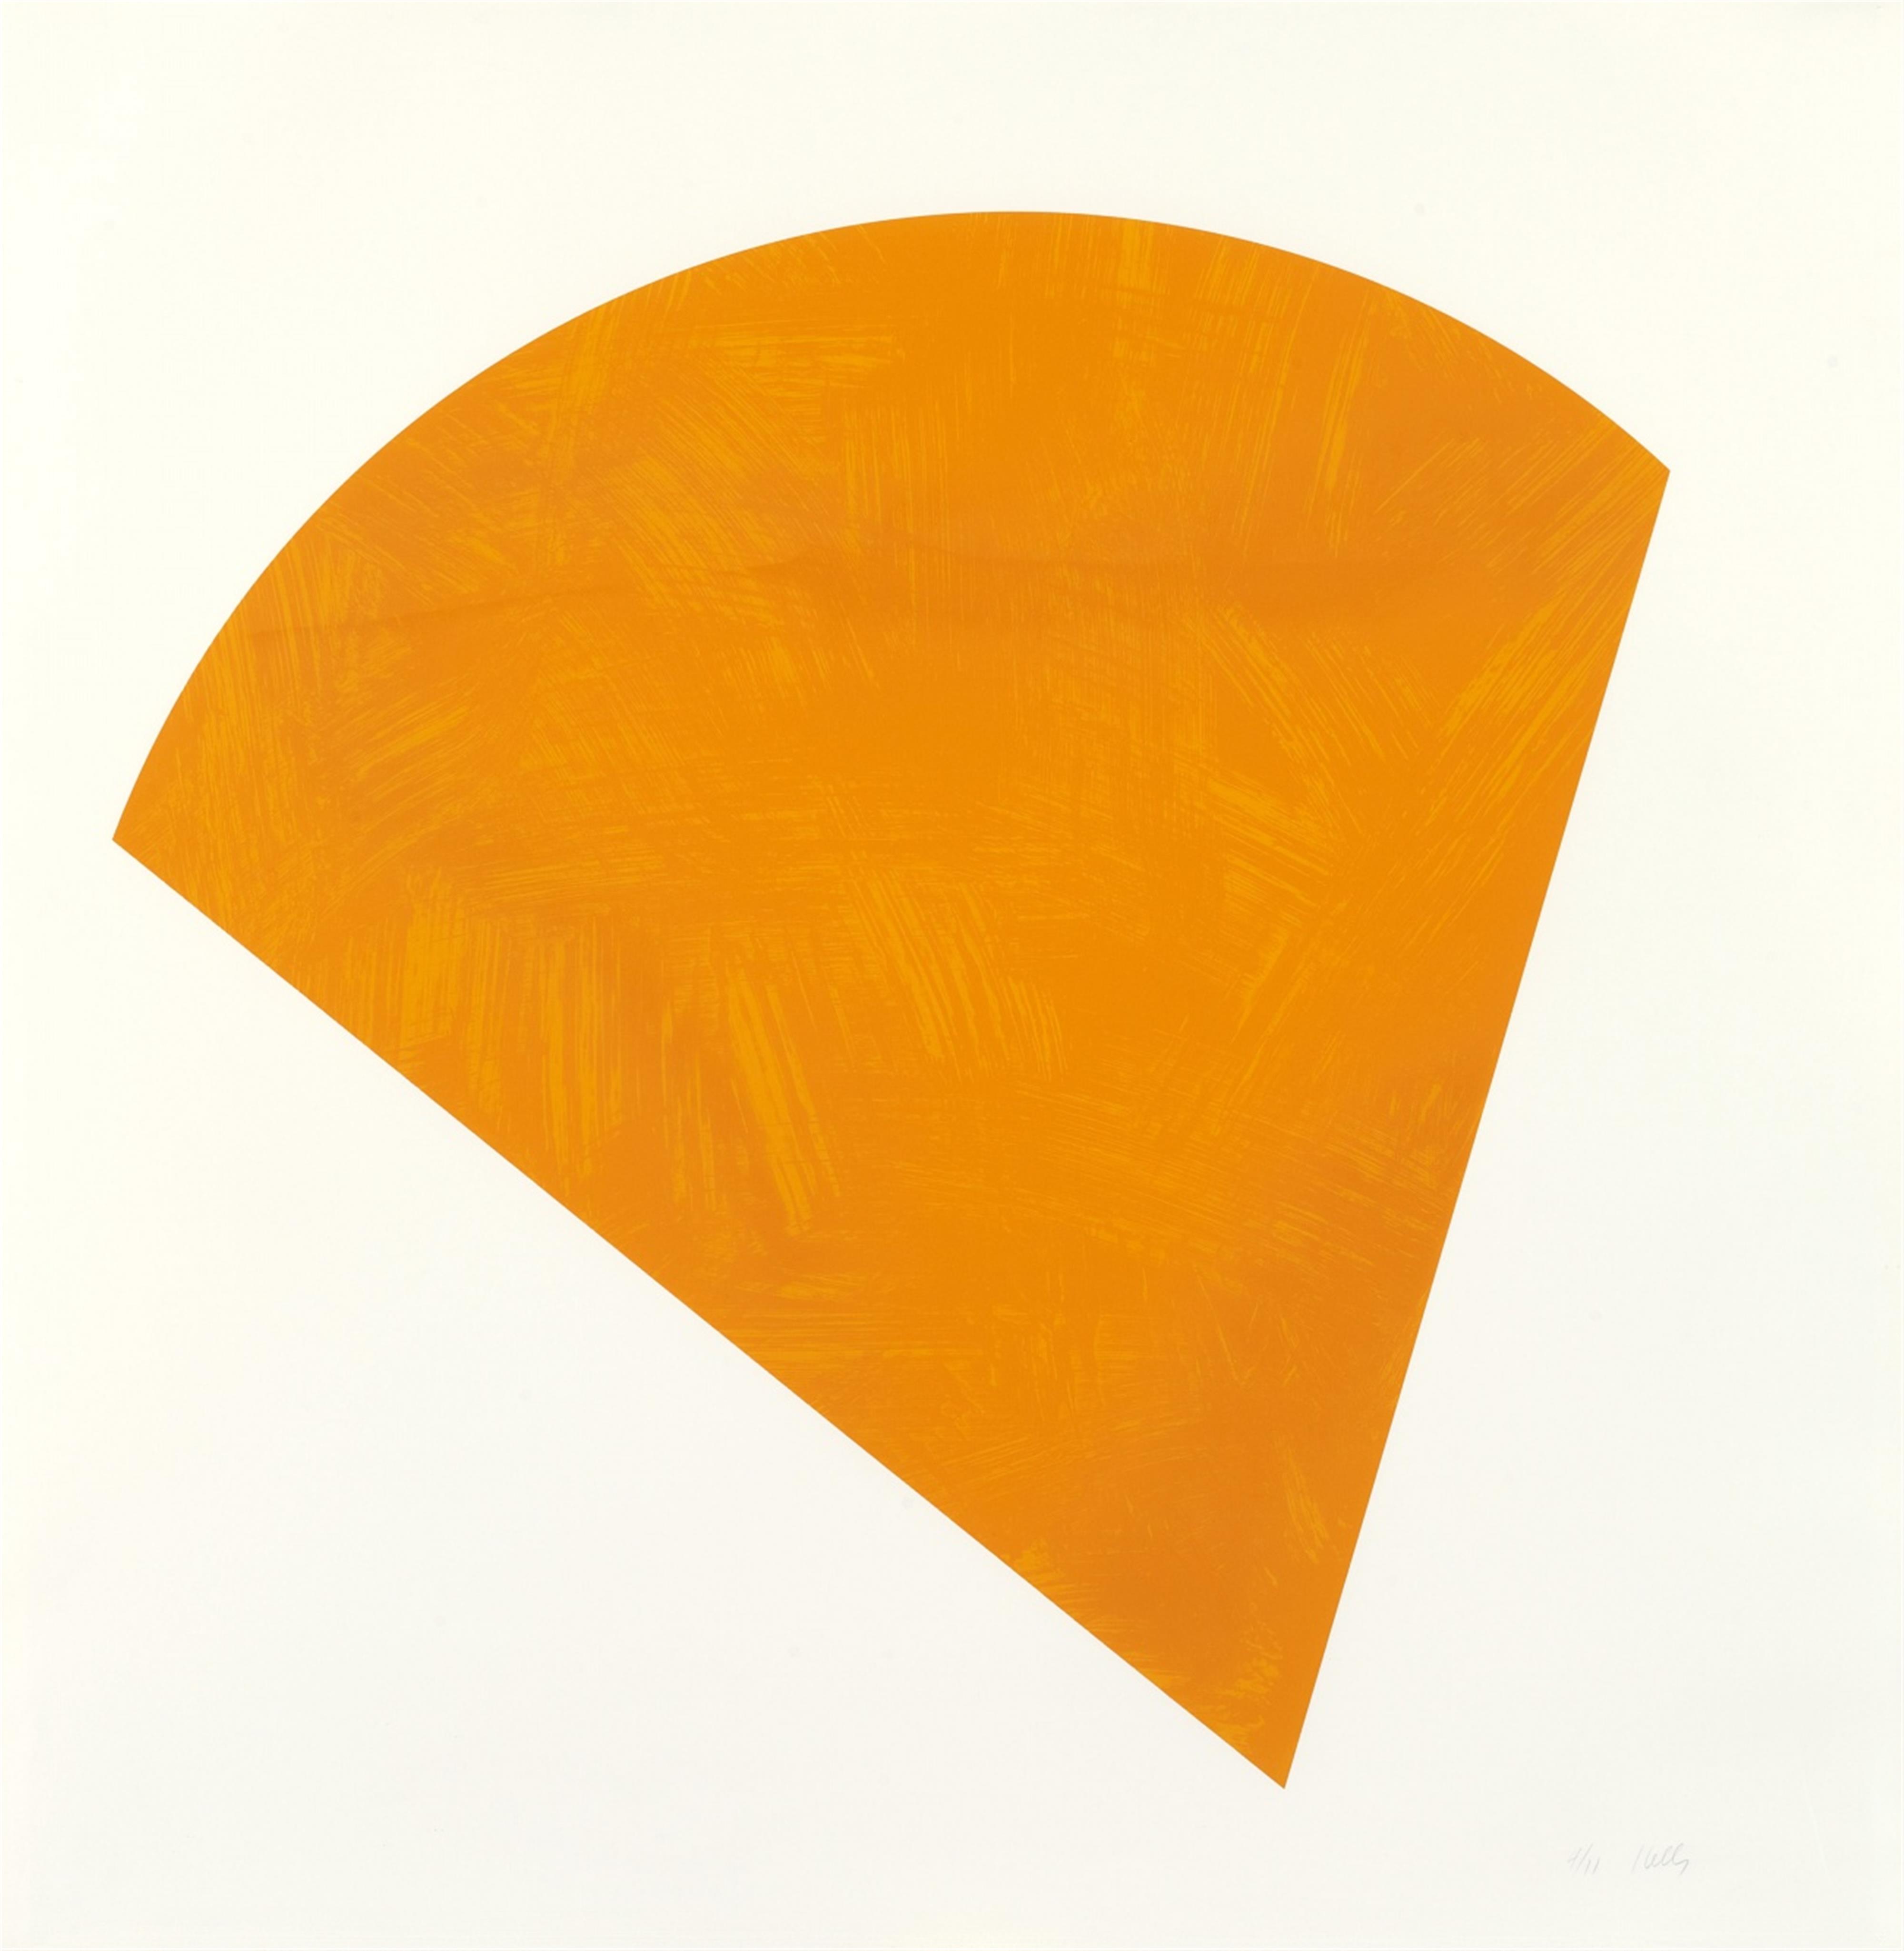 Ellsworth Kelly - Untitled (Orange state II) - image-1